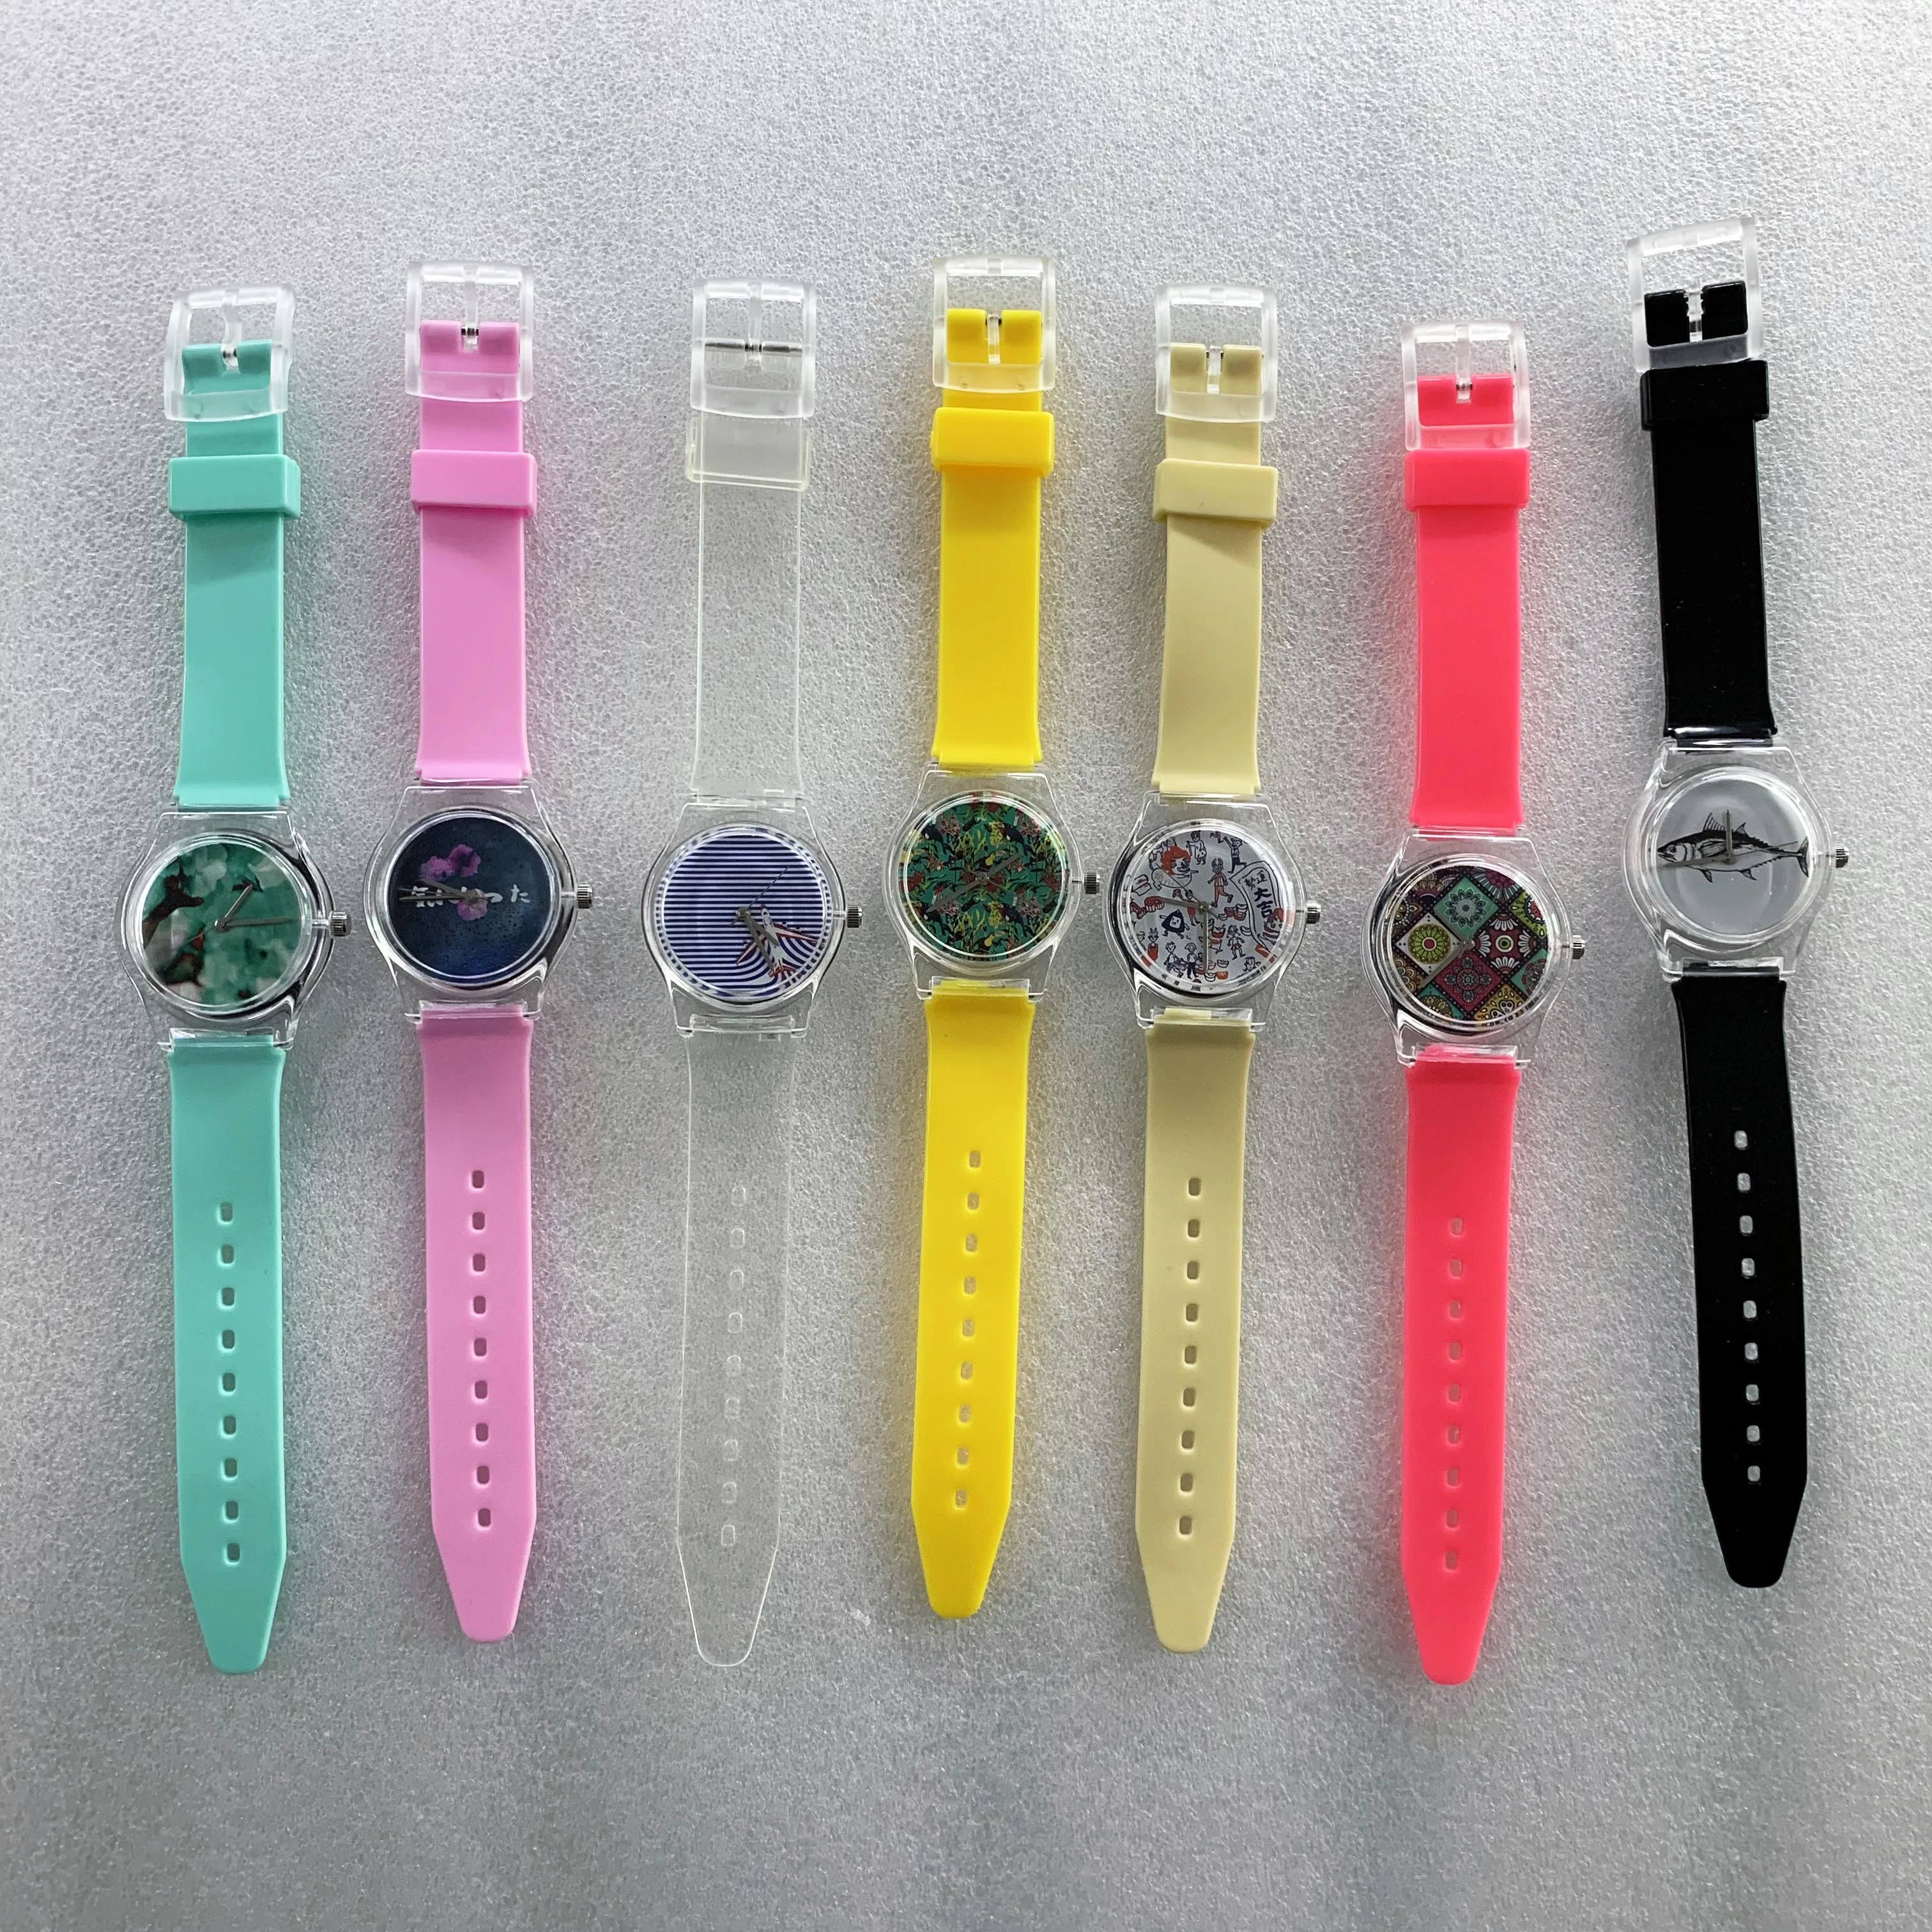 Plastic Custom Design Watches Design Your Own Unisex Quartz Watches ...